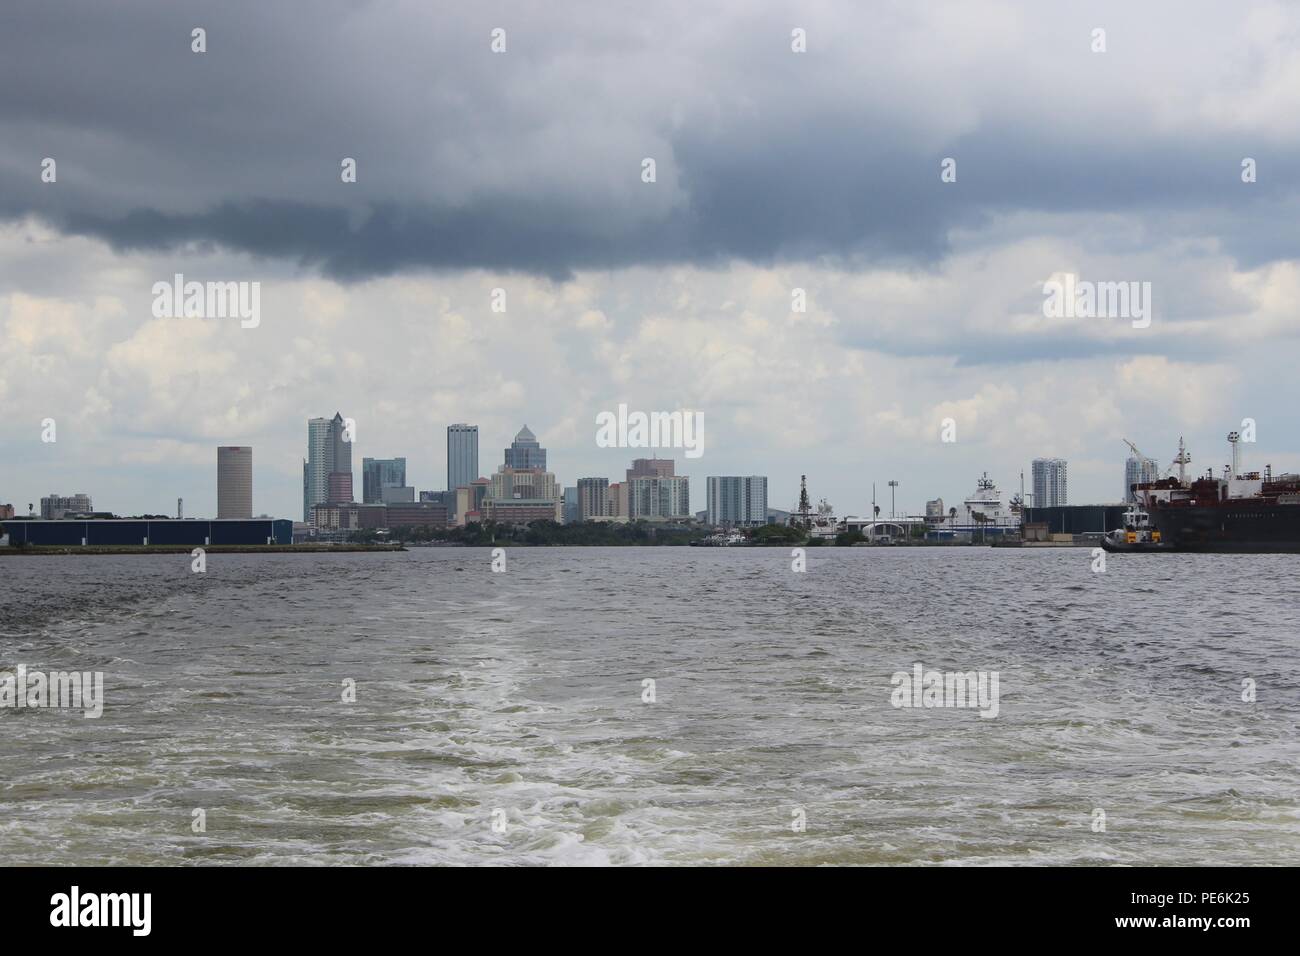 Nubes oscuras colgando sobre el horizonte de Tampa, FL, EE.UU. Foto de stock